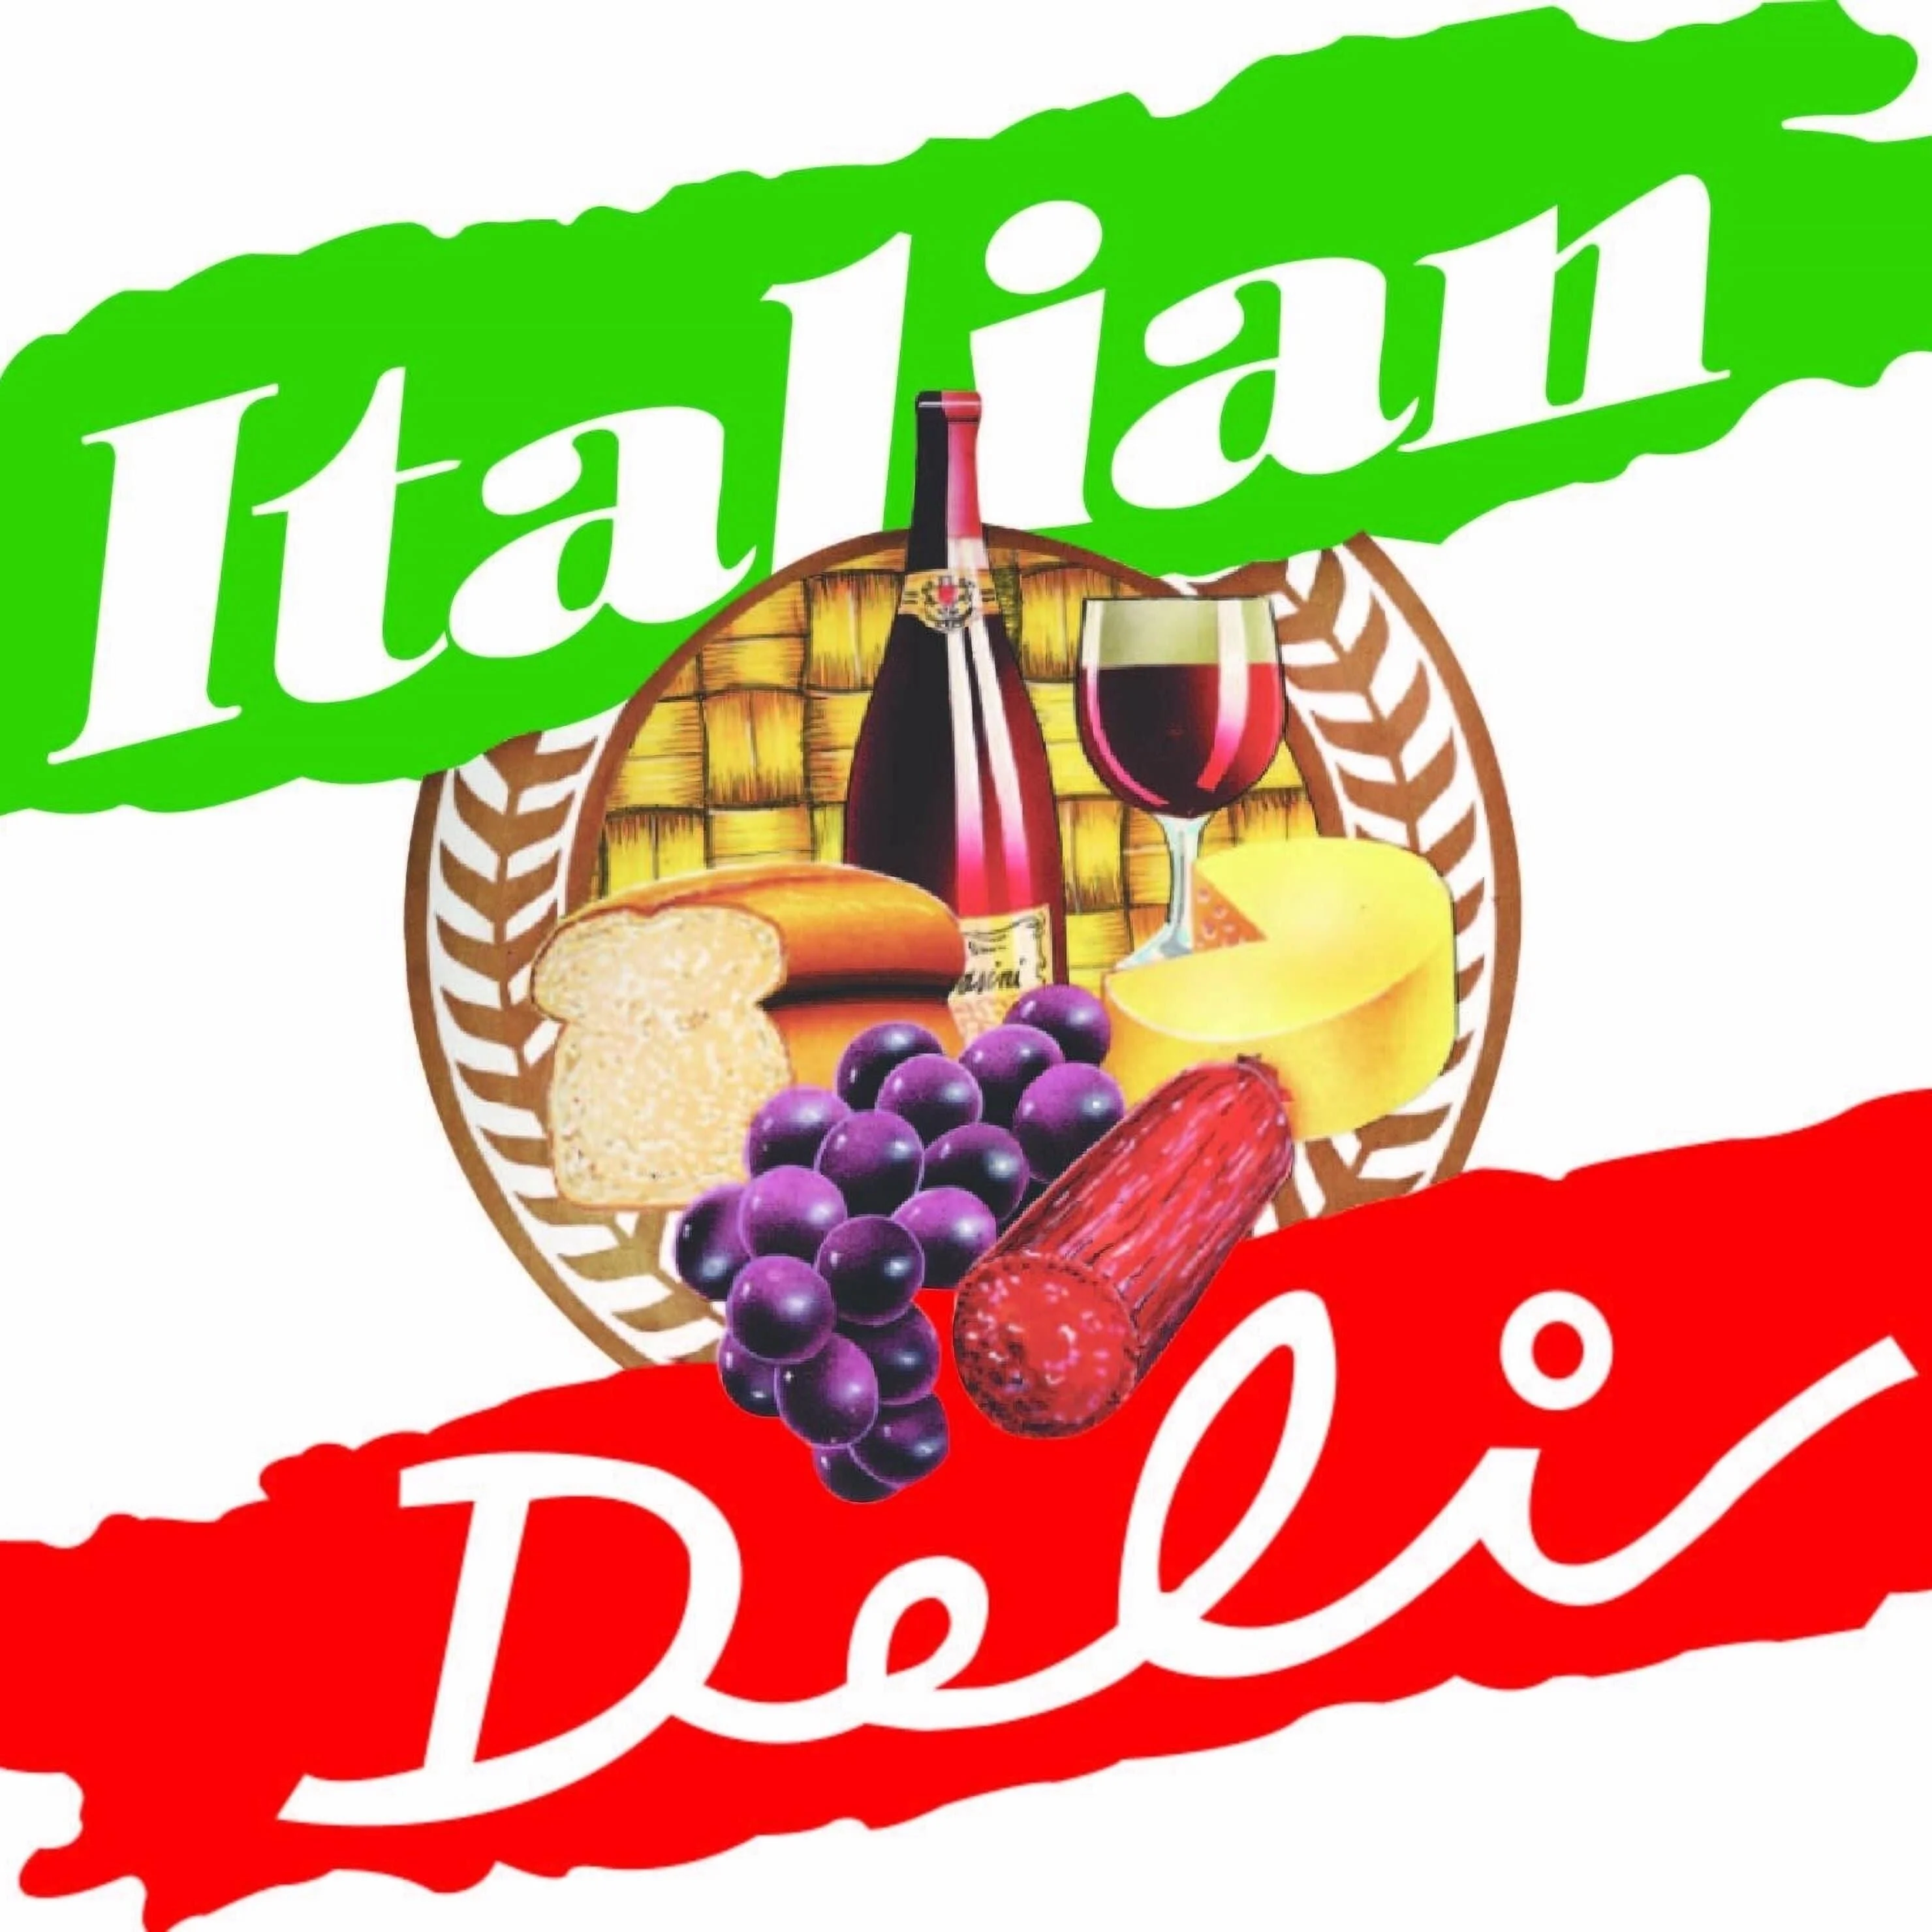 Italian Deli - policentro-4077